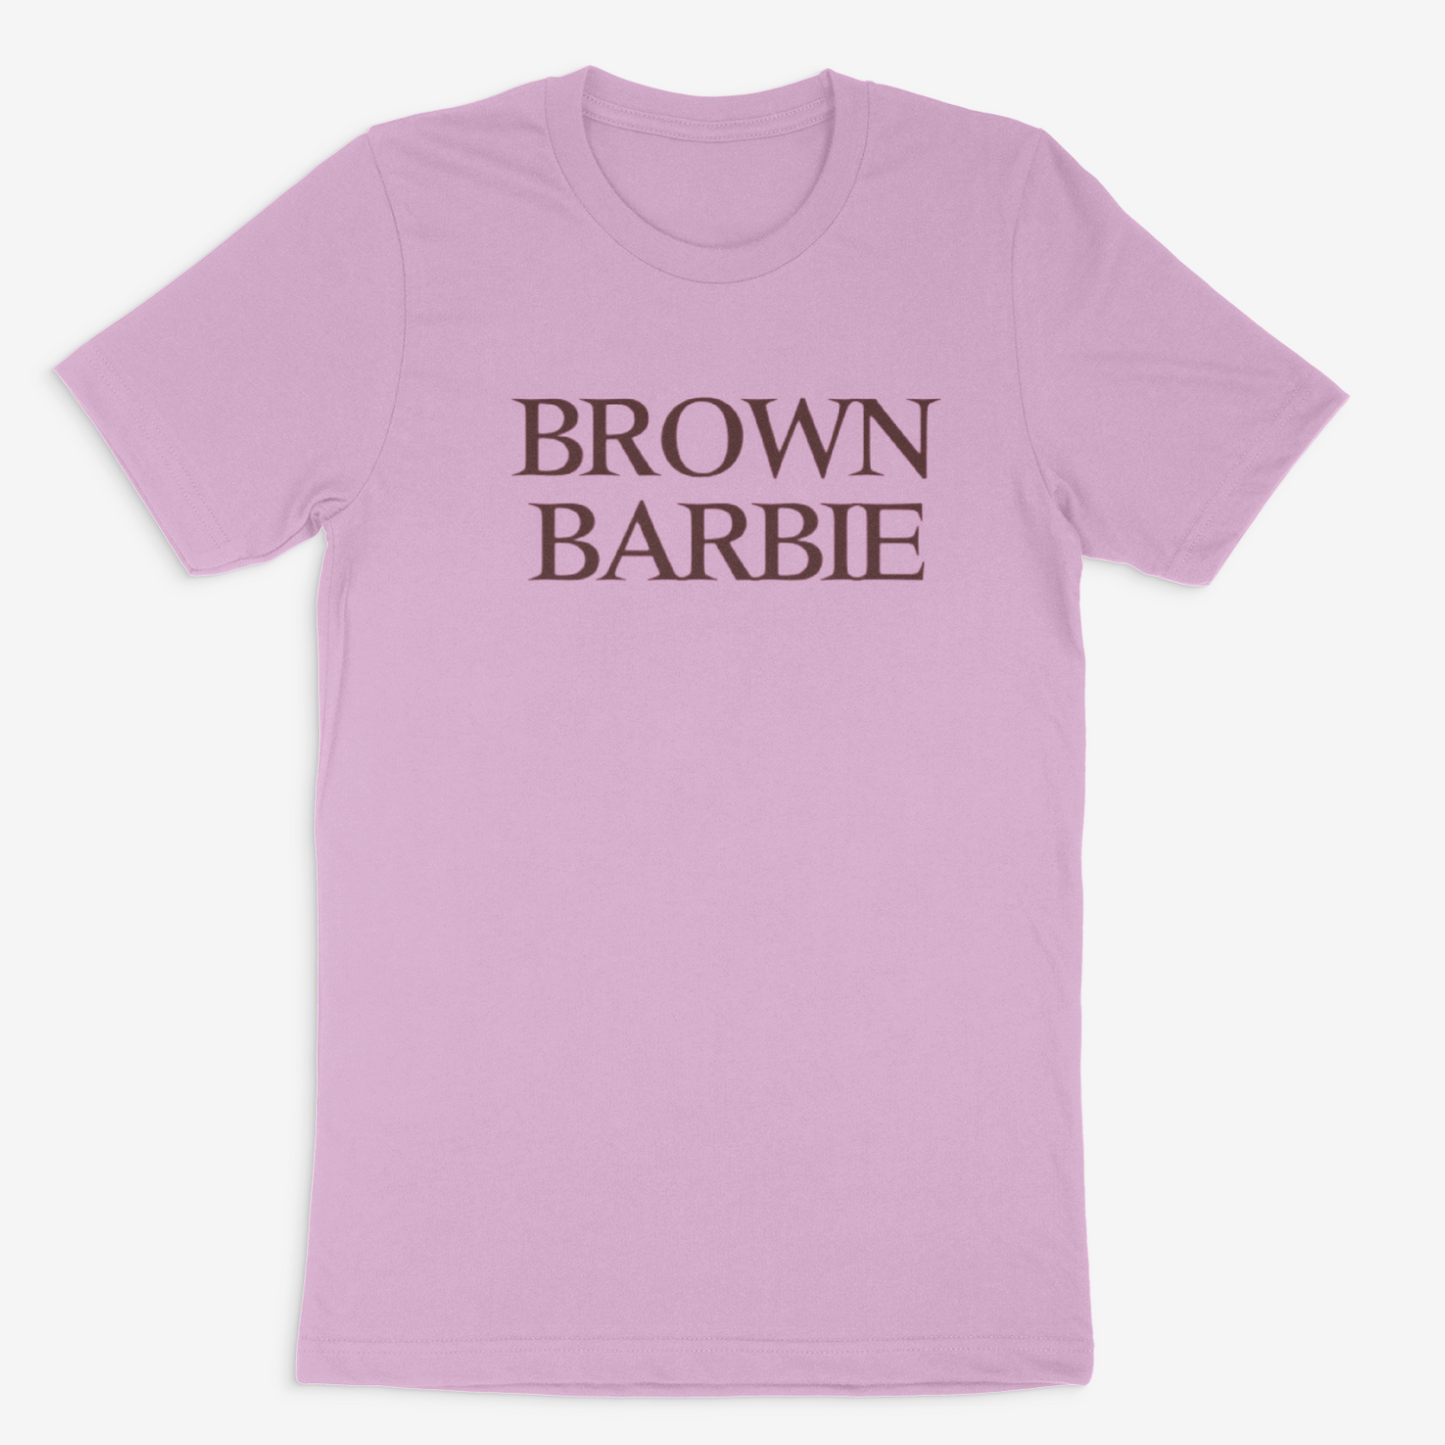 Brown Barbie Tee